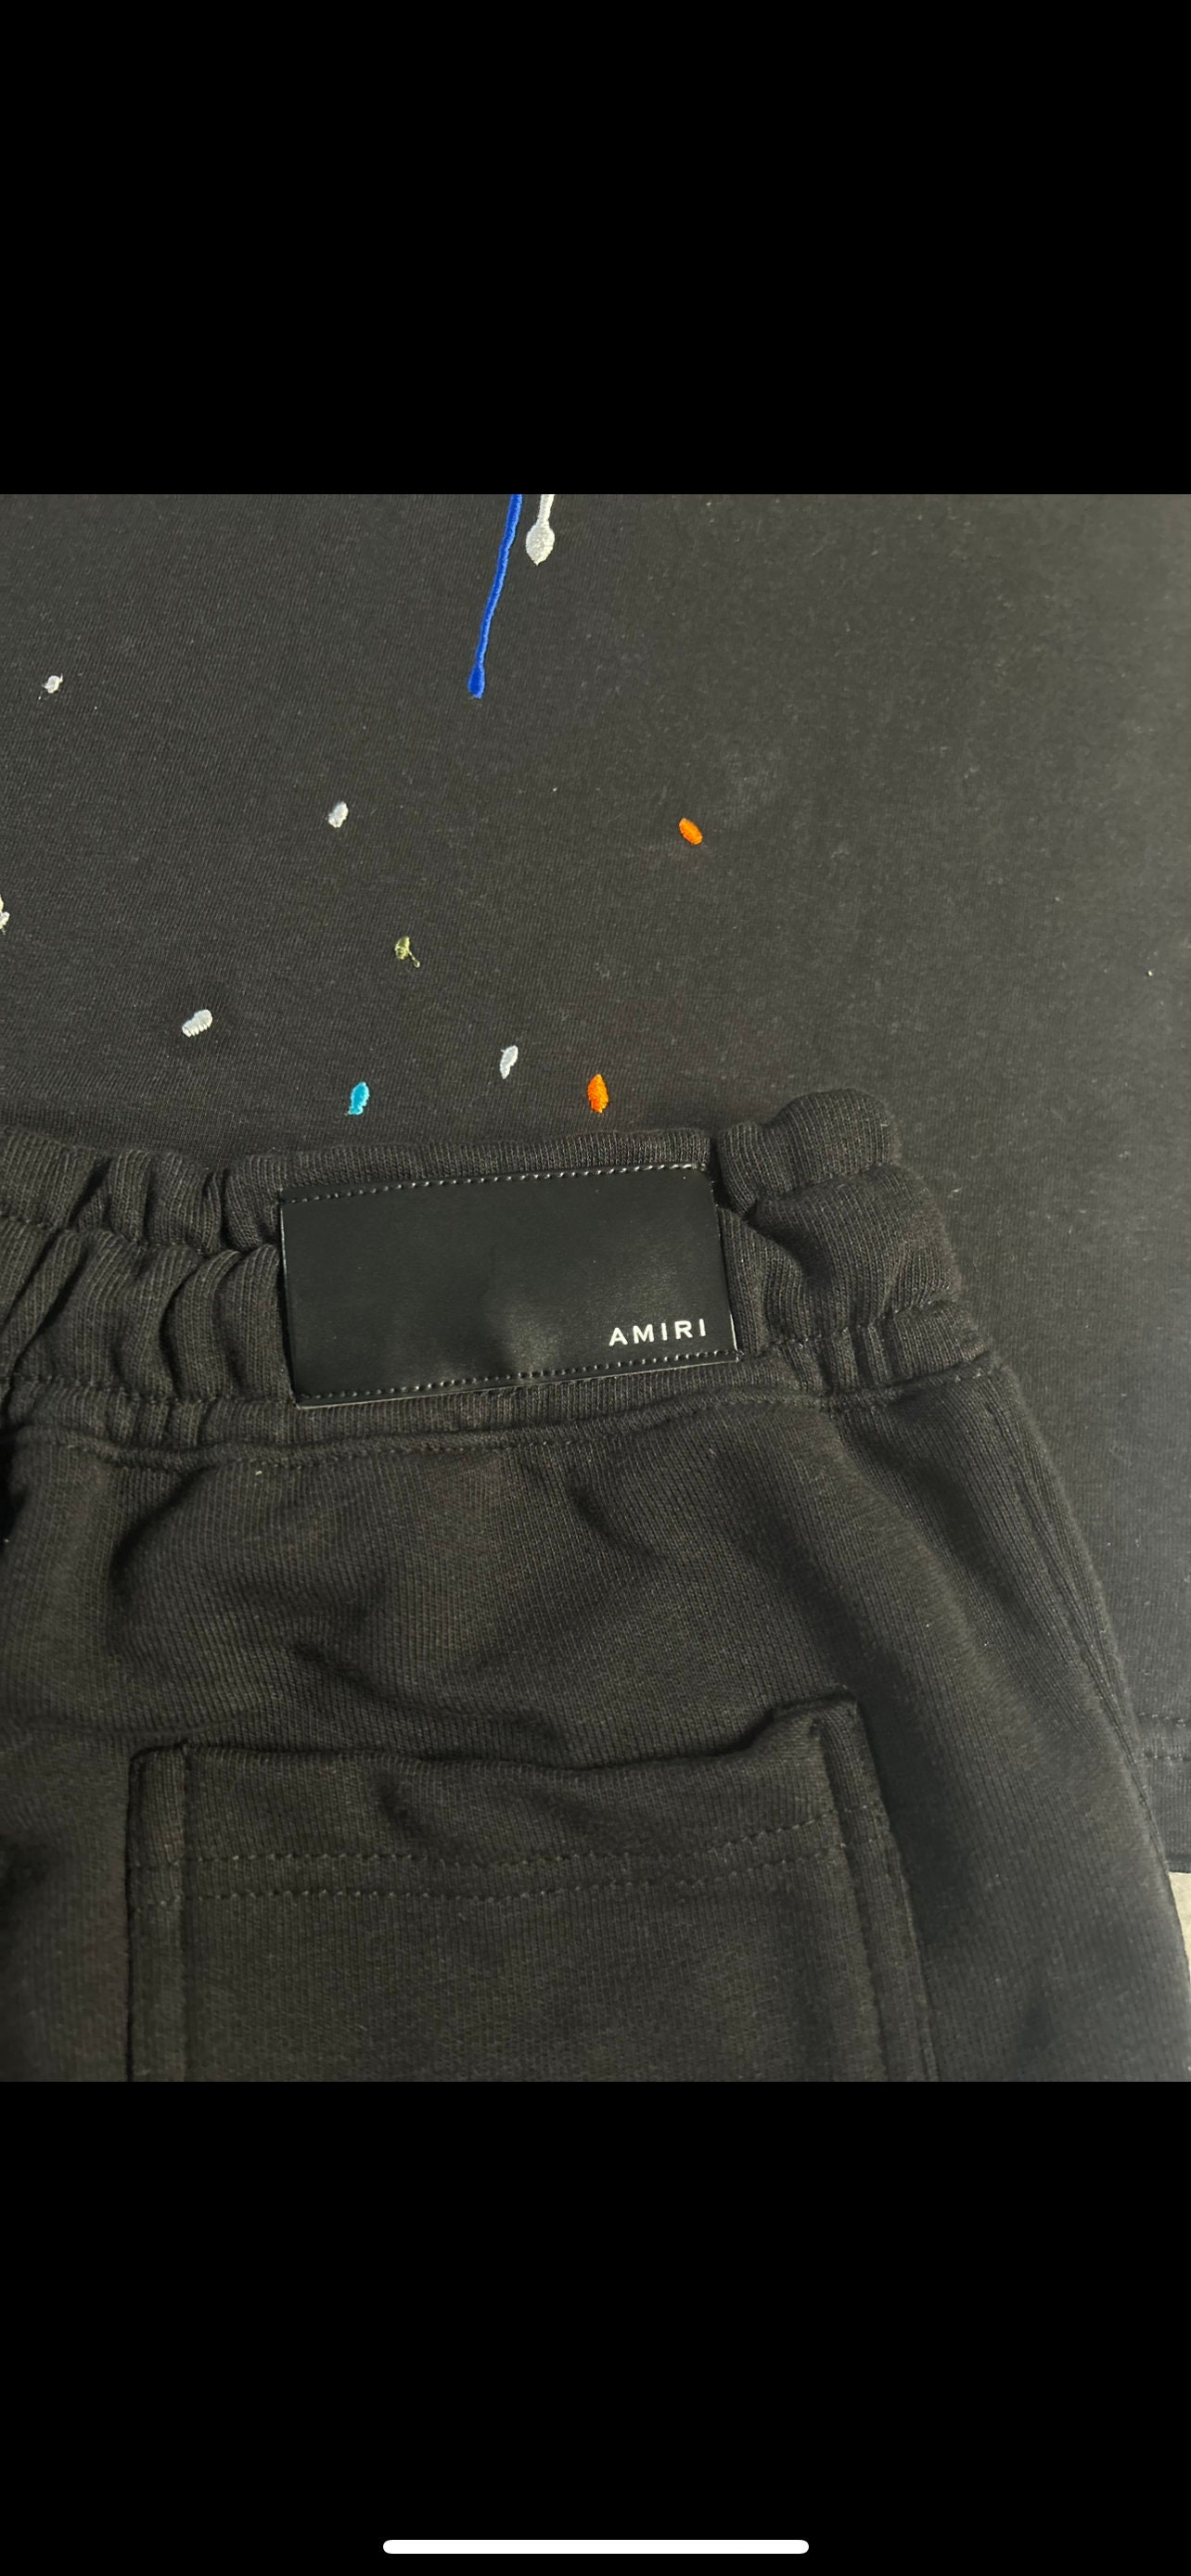 Amiri paint drip logo shorts – Ready2shipnyc